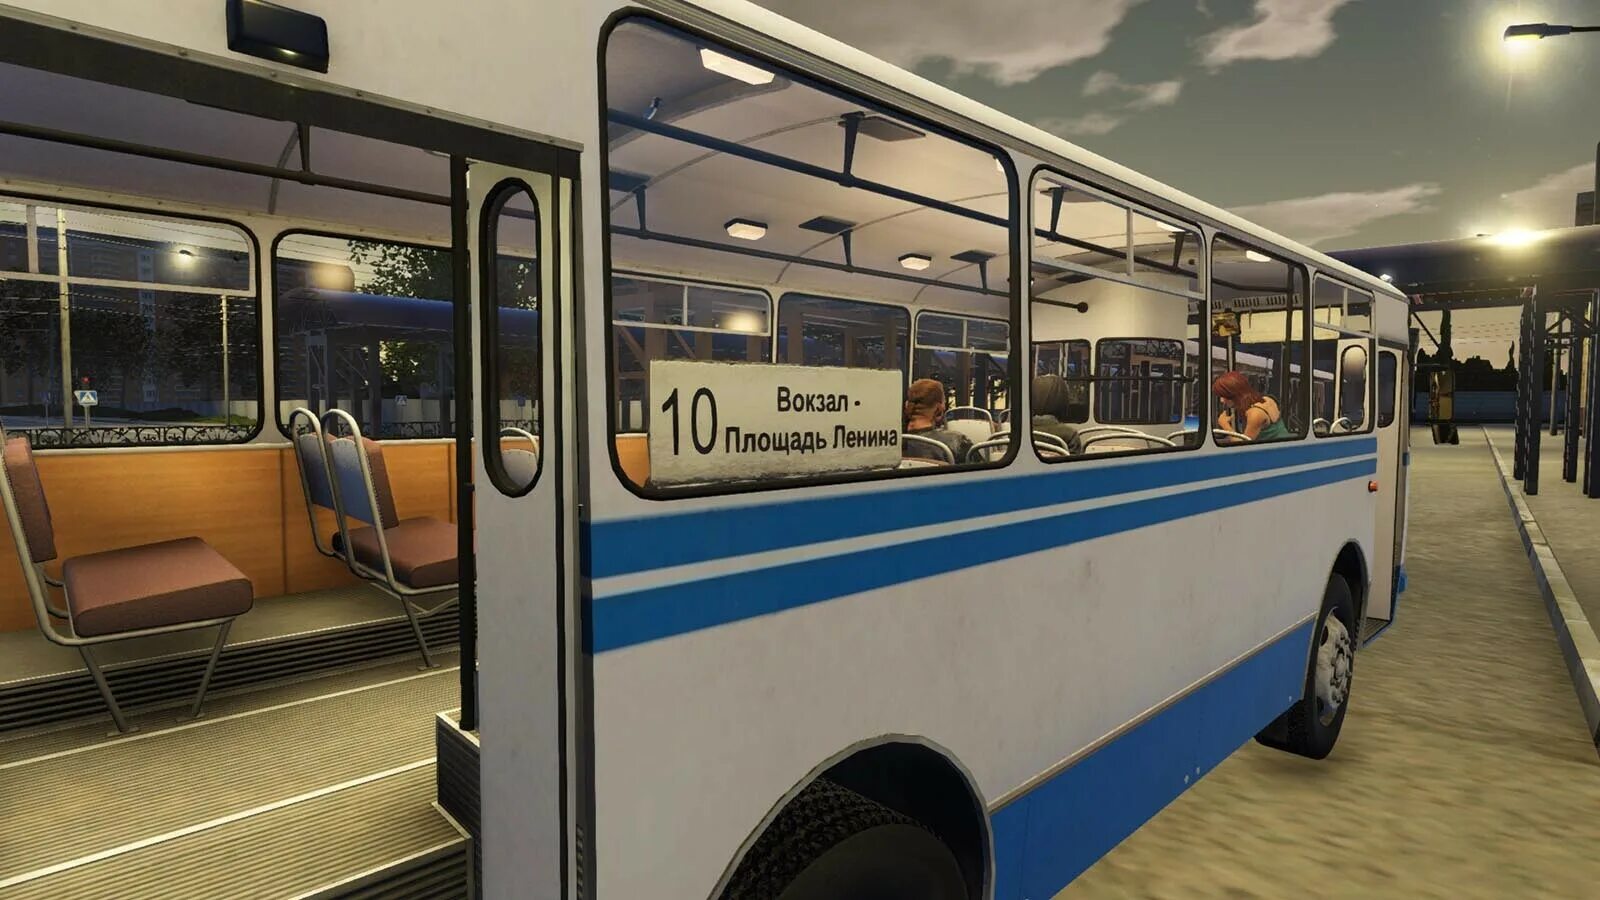 Bus Driver Simulator 2019 Серпухов. Bus Driver Simulator 19. Bus Driver Simulator 2019 автобусы. Бус драйвер симулятор 2019. Игра автобус бас симулятор